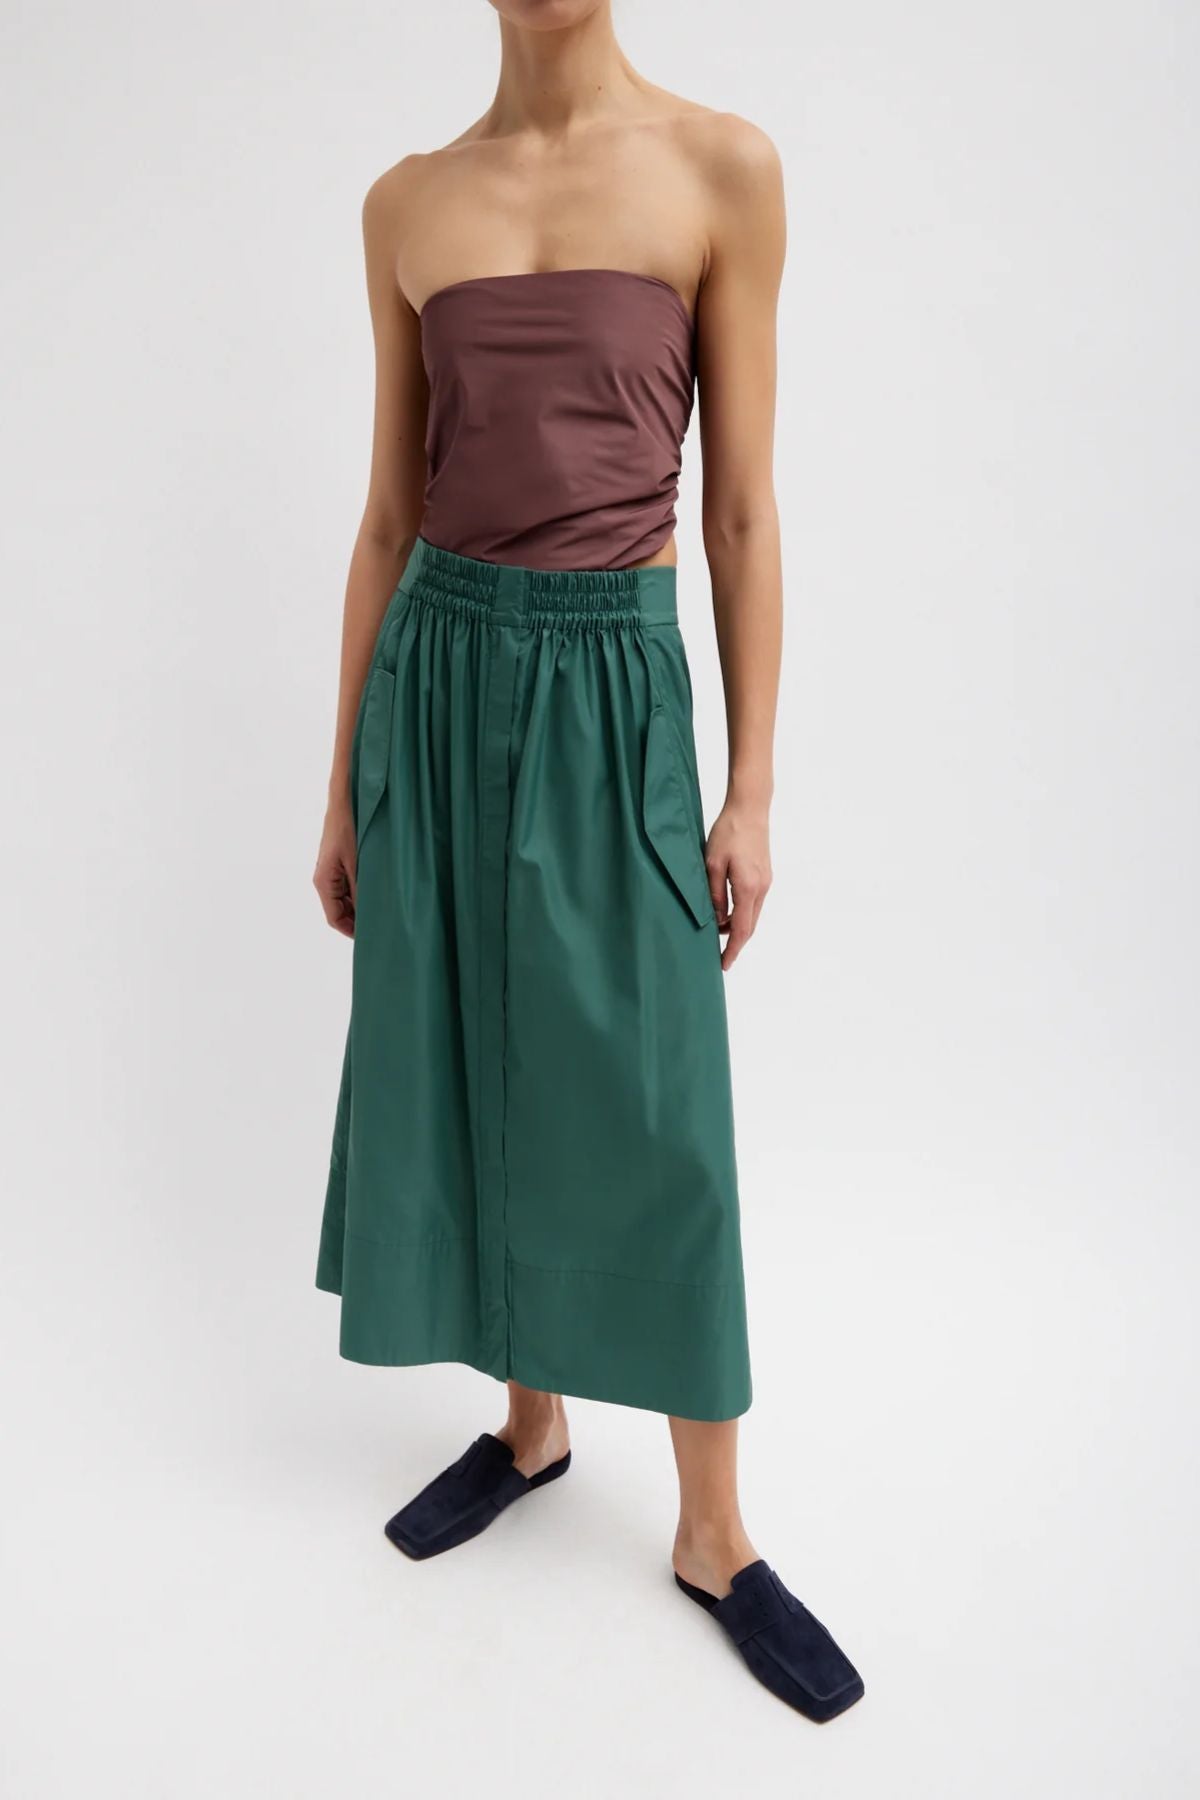 Tibi Italian Sporty Nylon Full Skirt - Dark Hunter Green